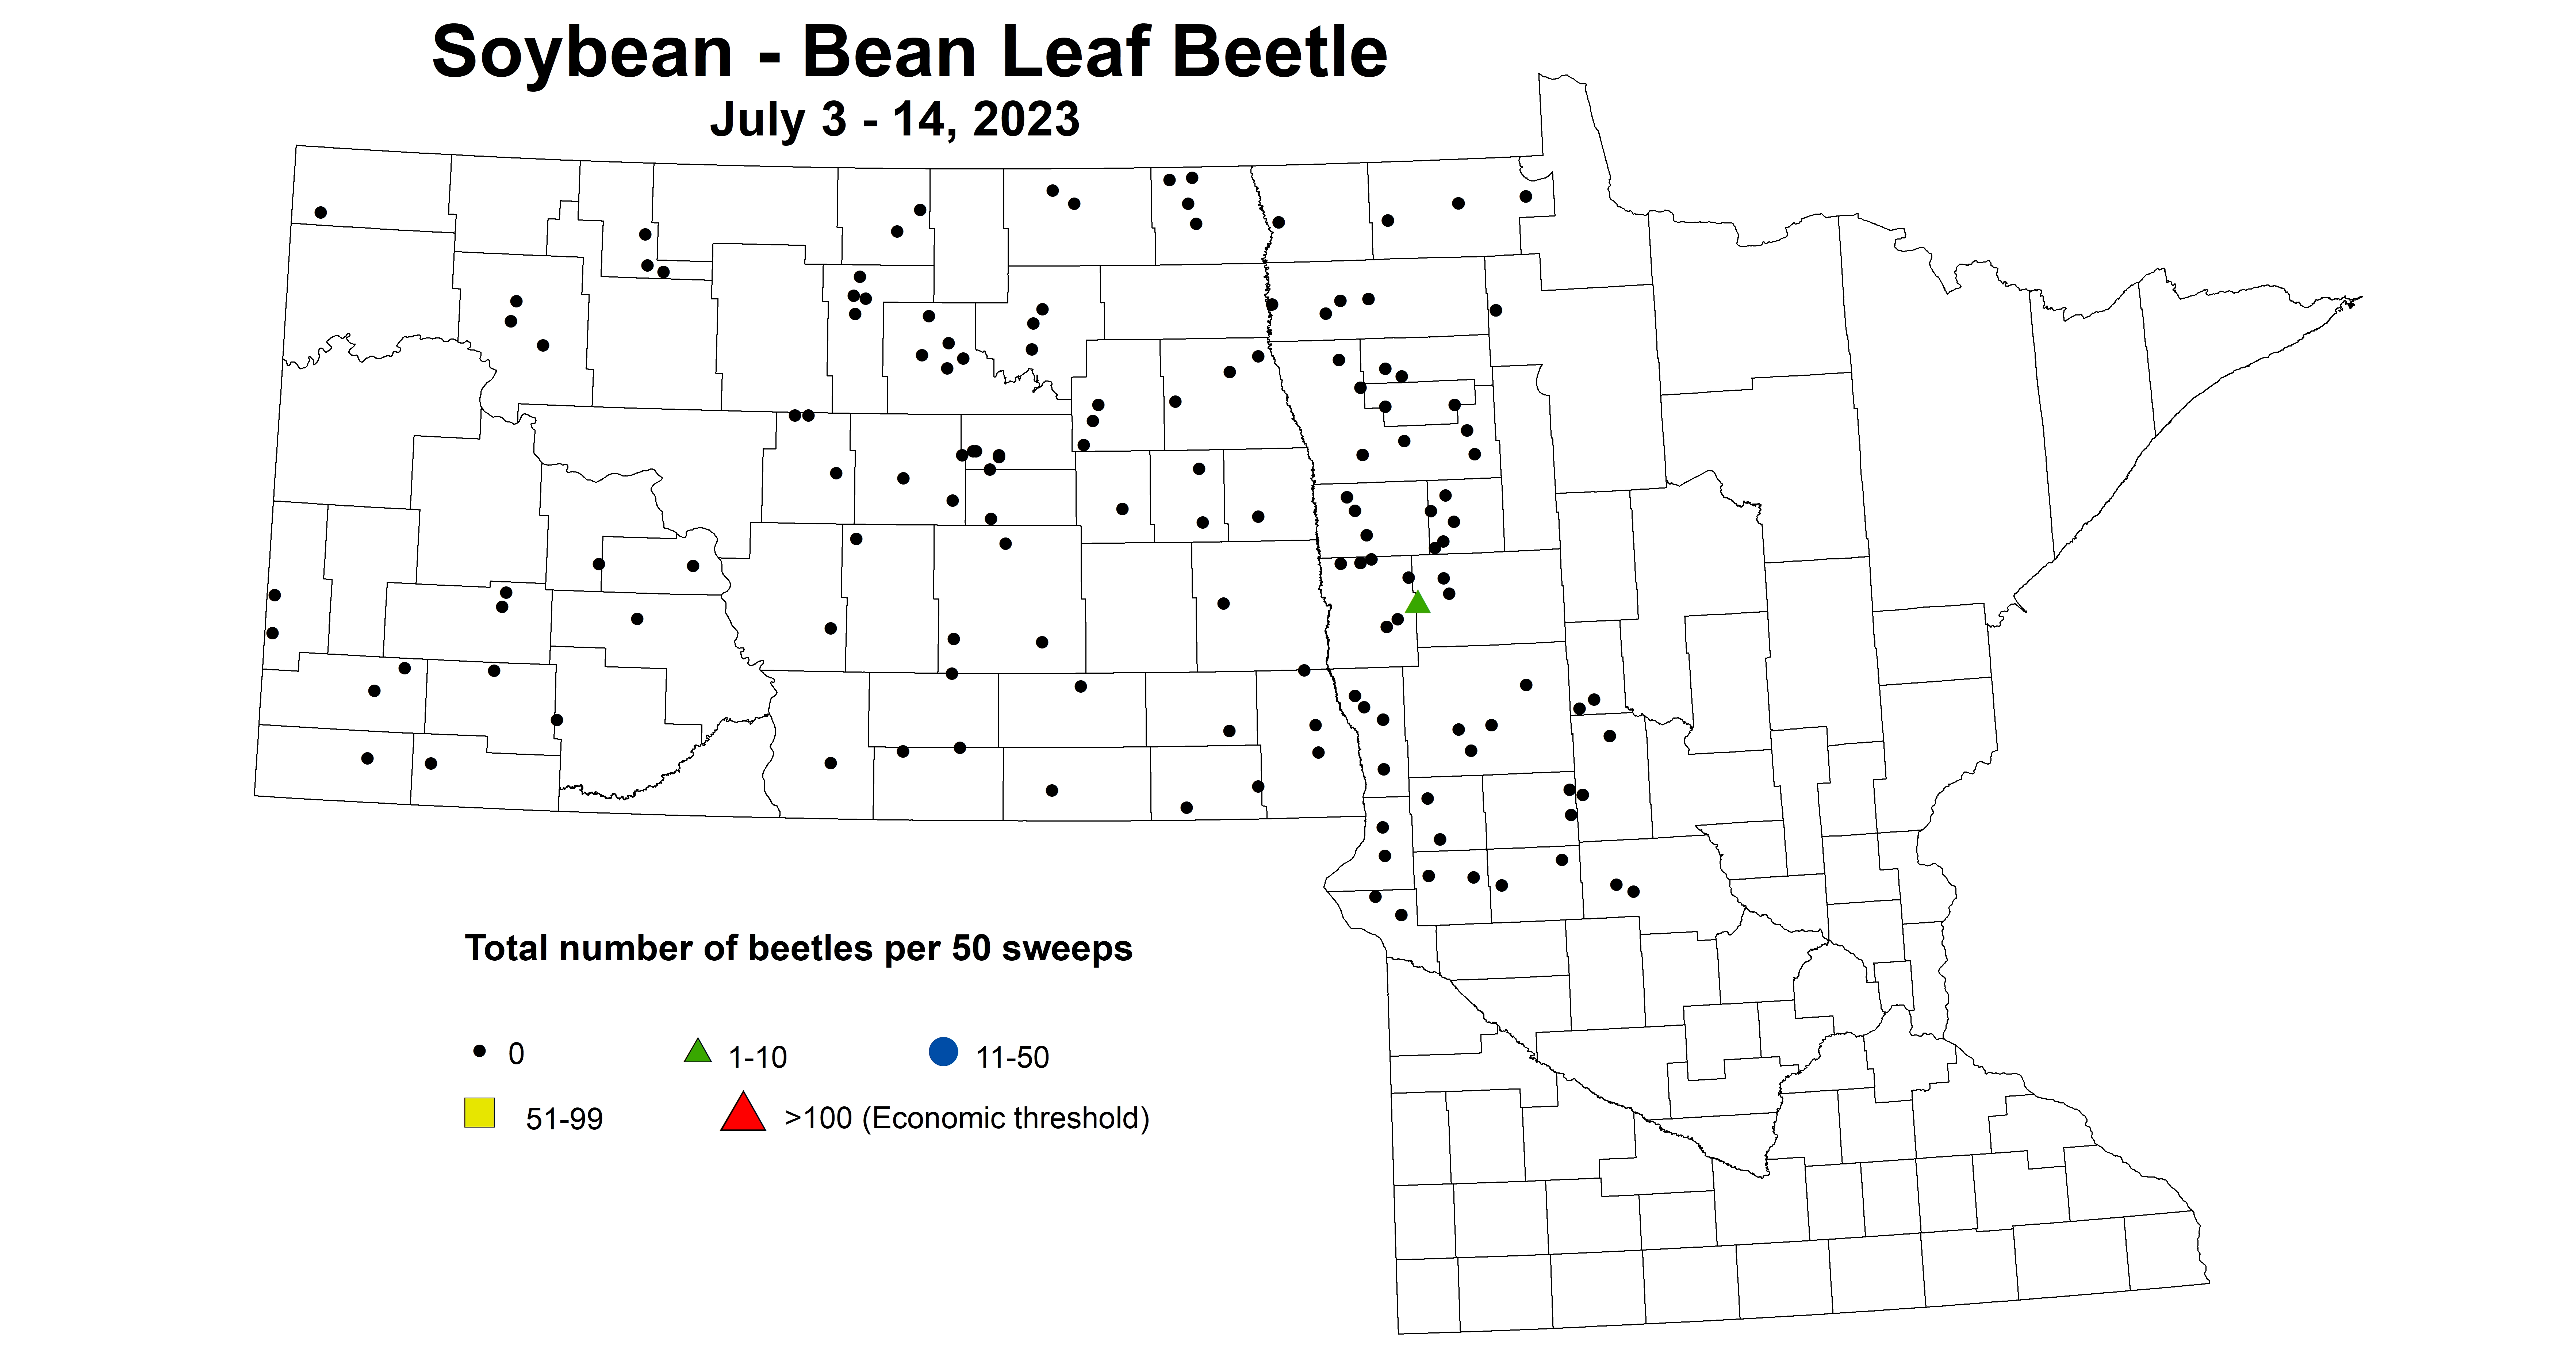 soybean BLB total number of beetles per 50 sweeps July 3-14 2023